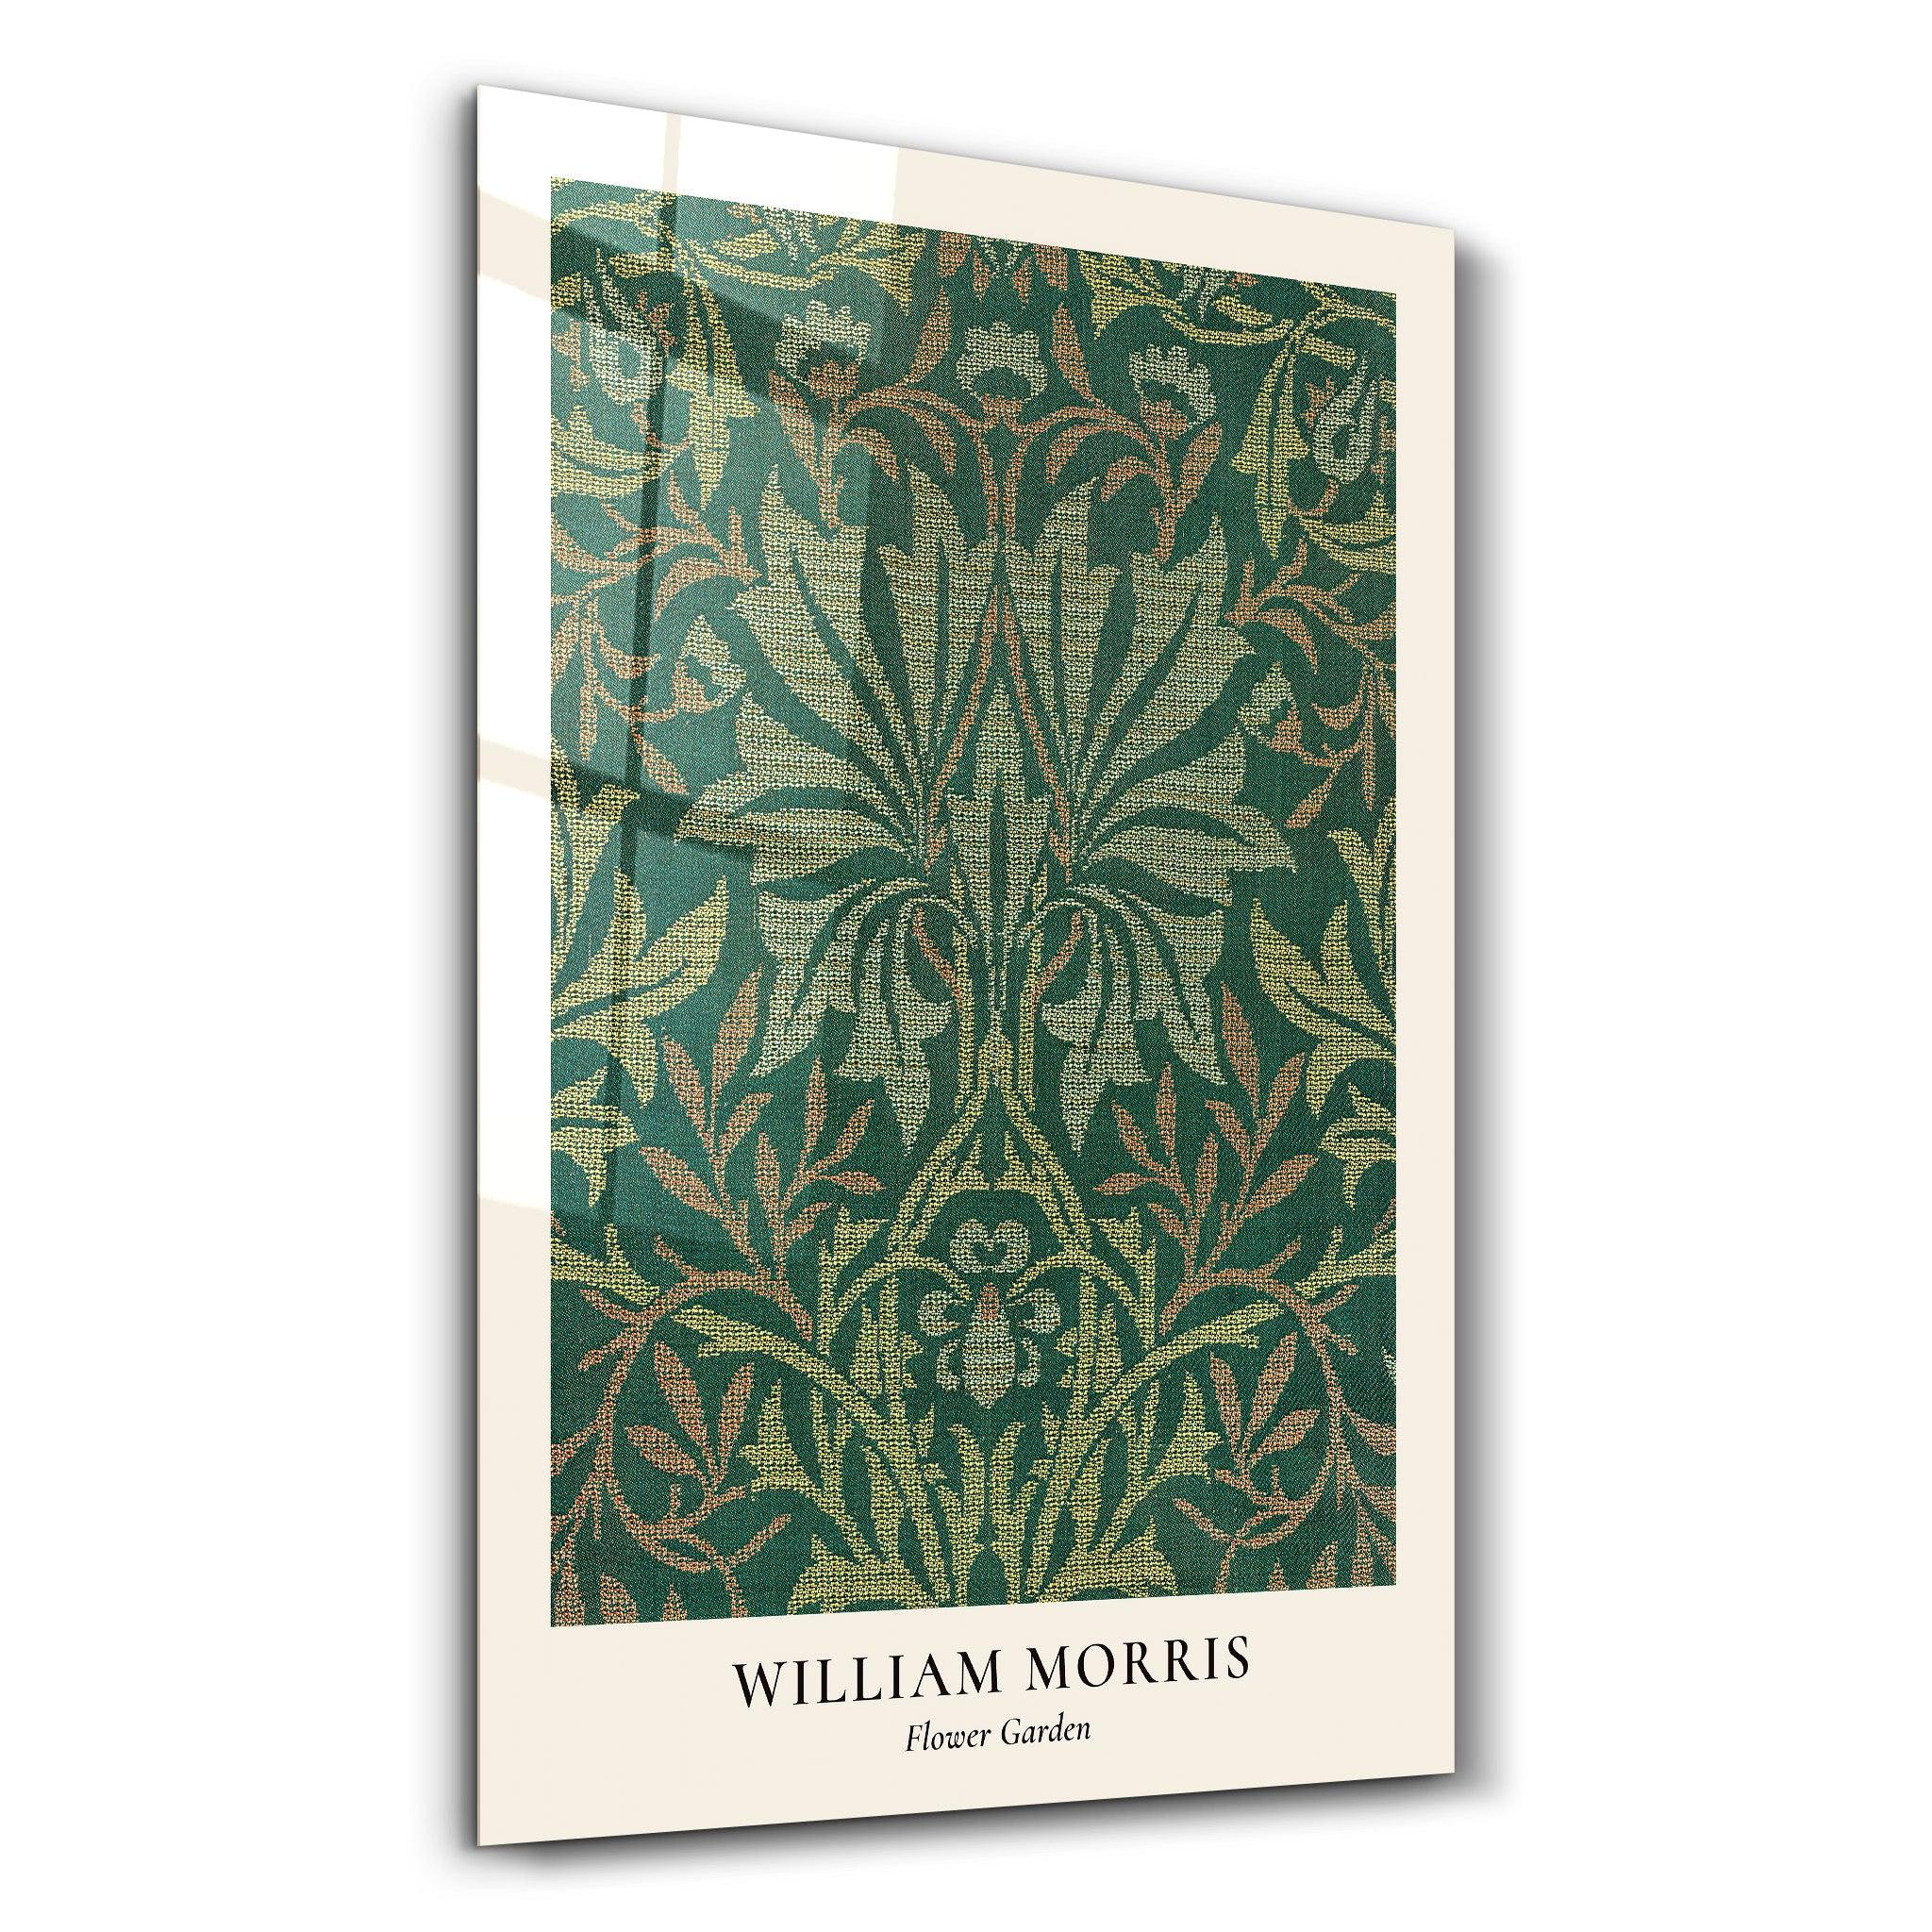 William Morris - Flower Garden | Gallery Print Collection Glass Wall Art - ArtDesigna Glass Printing Wall Art